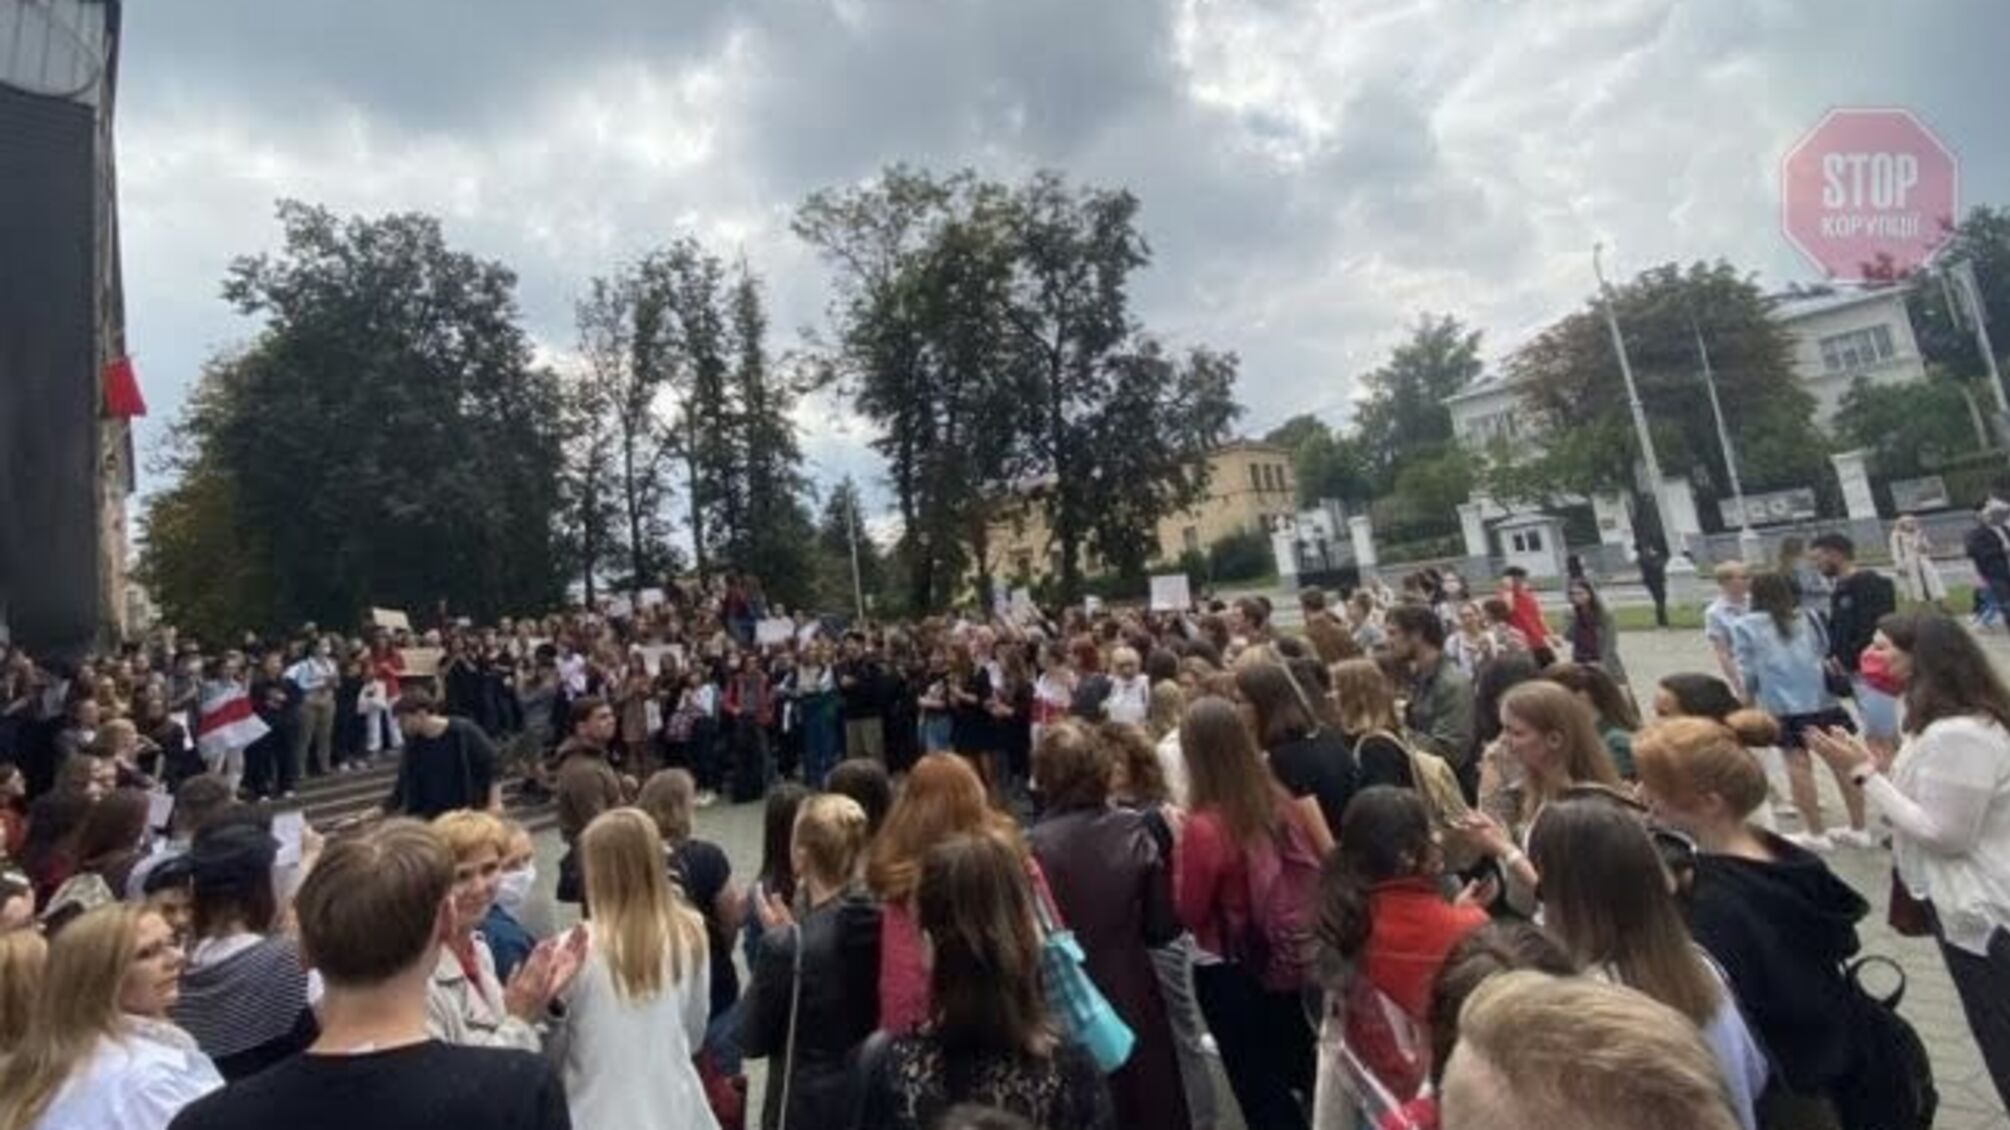 У Мінську знову проходить акція протесту, є затримані (відео)